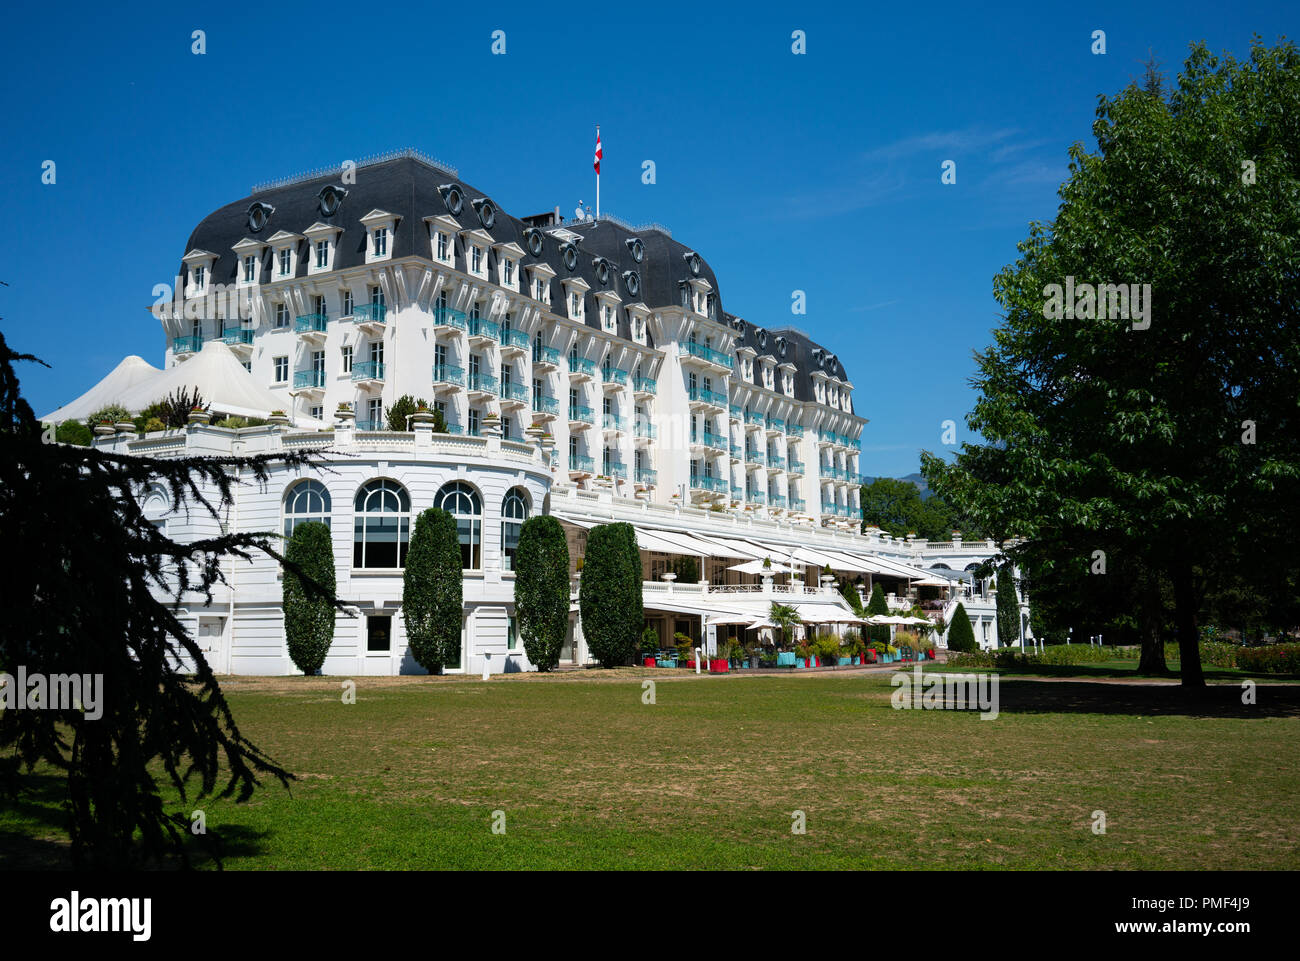 Il 7 agosto 2018, Annecy Francia : Imperial palace hotel vista in Annecy Francia con architettura Belle Epoque Foto Stock